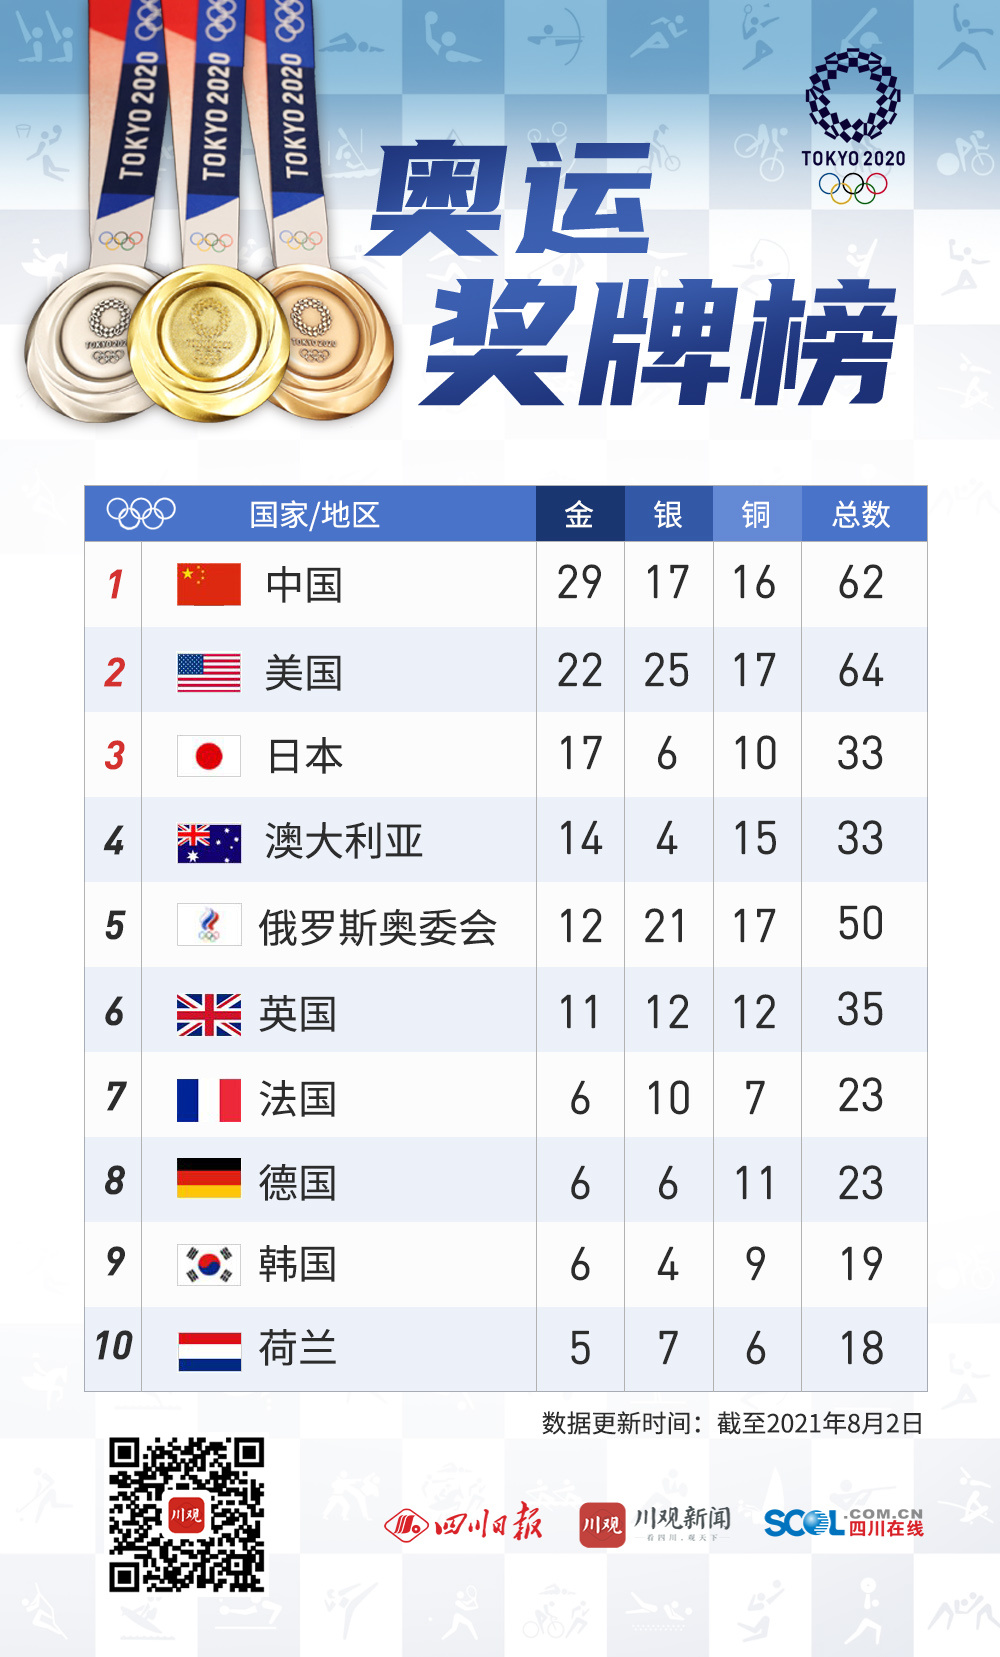 8月2日奖牌榜:中国29枚金牌超里约奥运,首位领跑